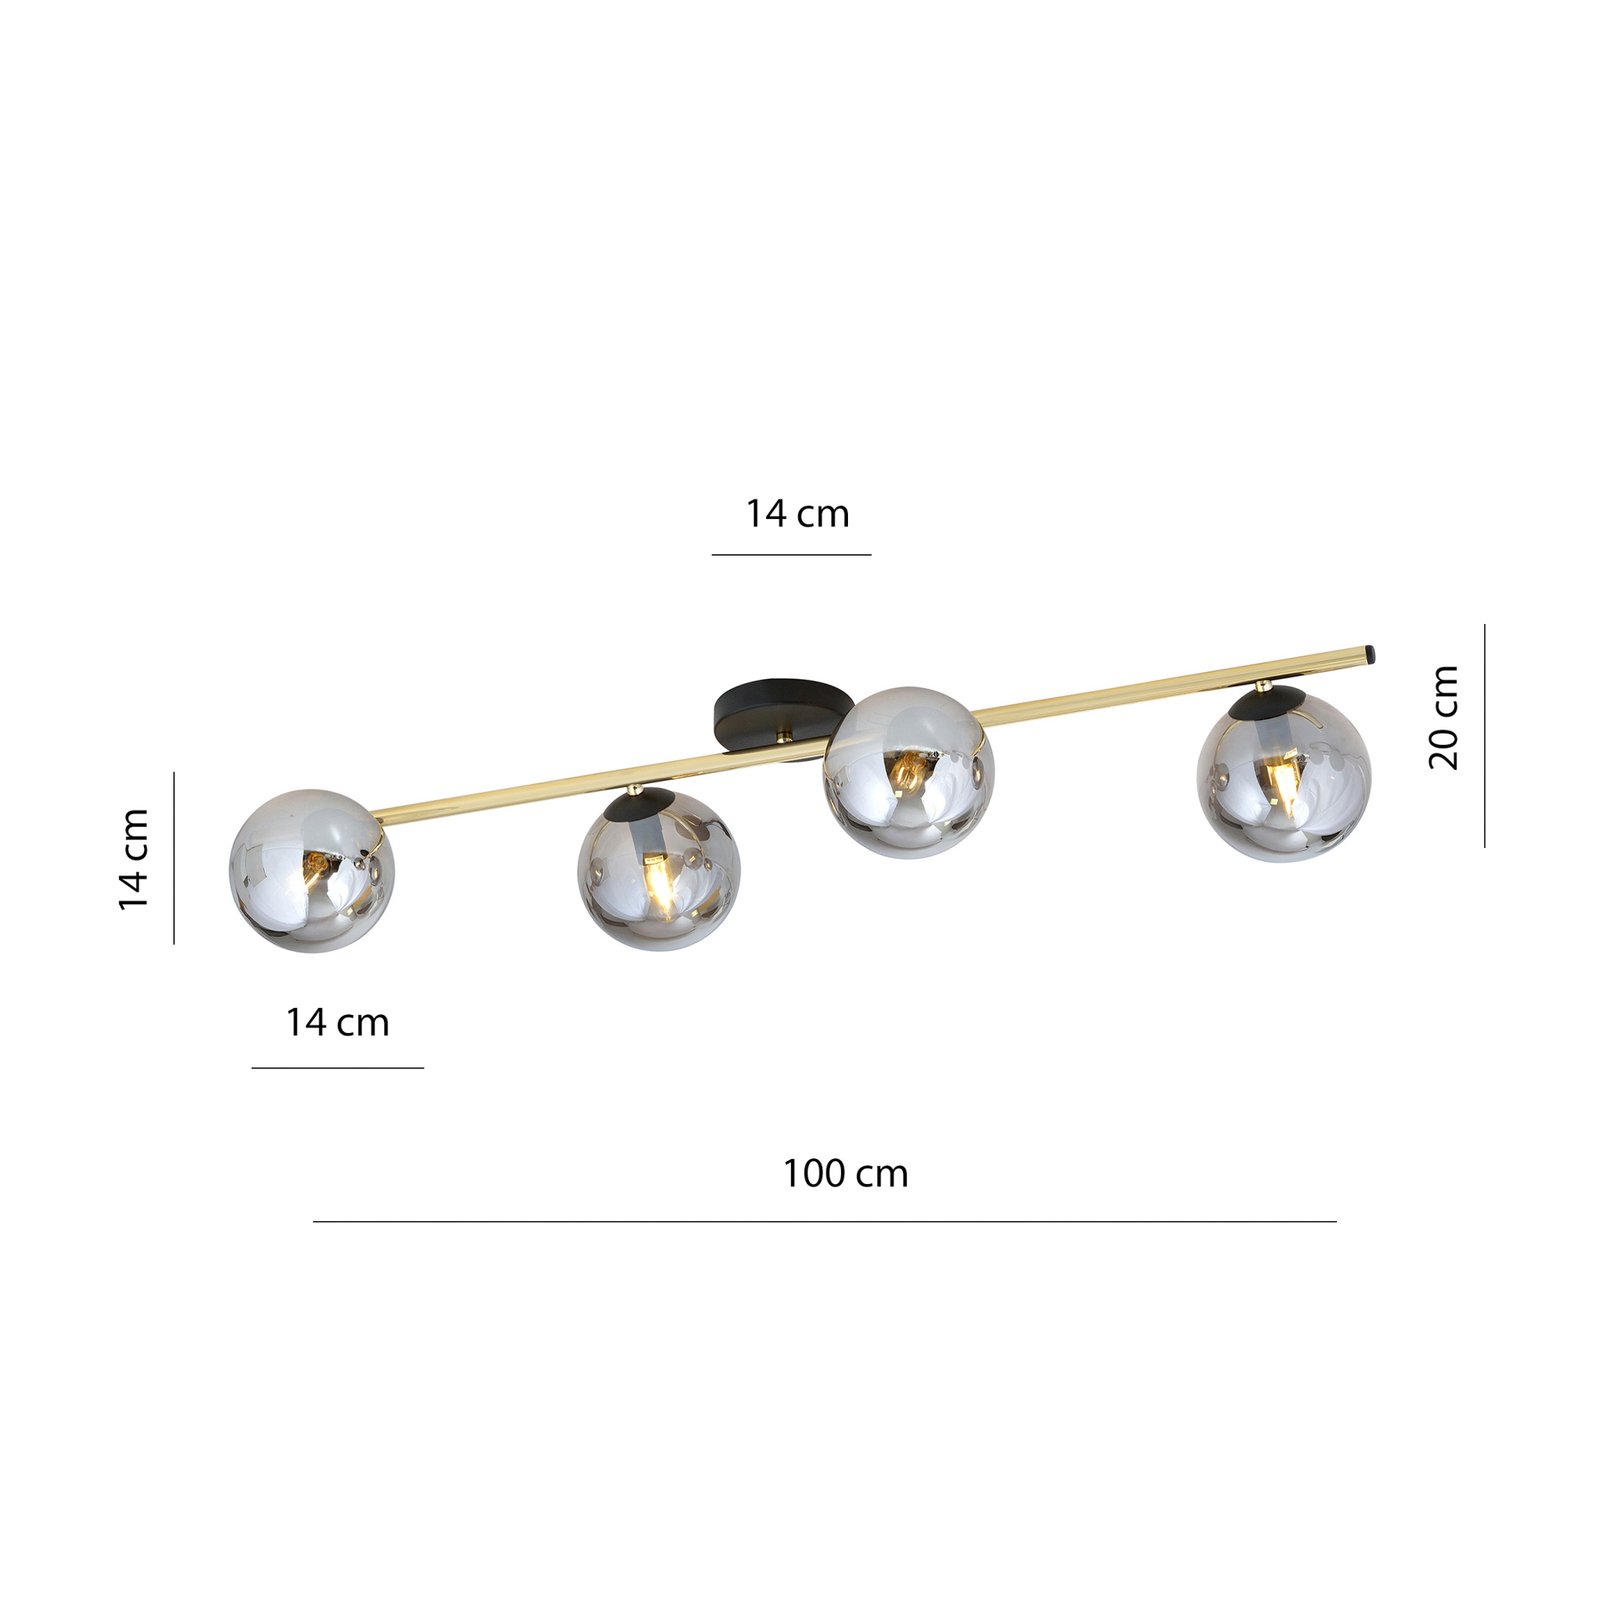 Deckenlampe Glassy 4-flg. linear schwarz/gold/grau